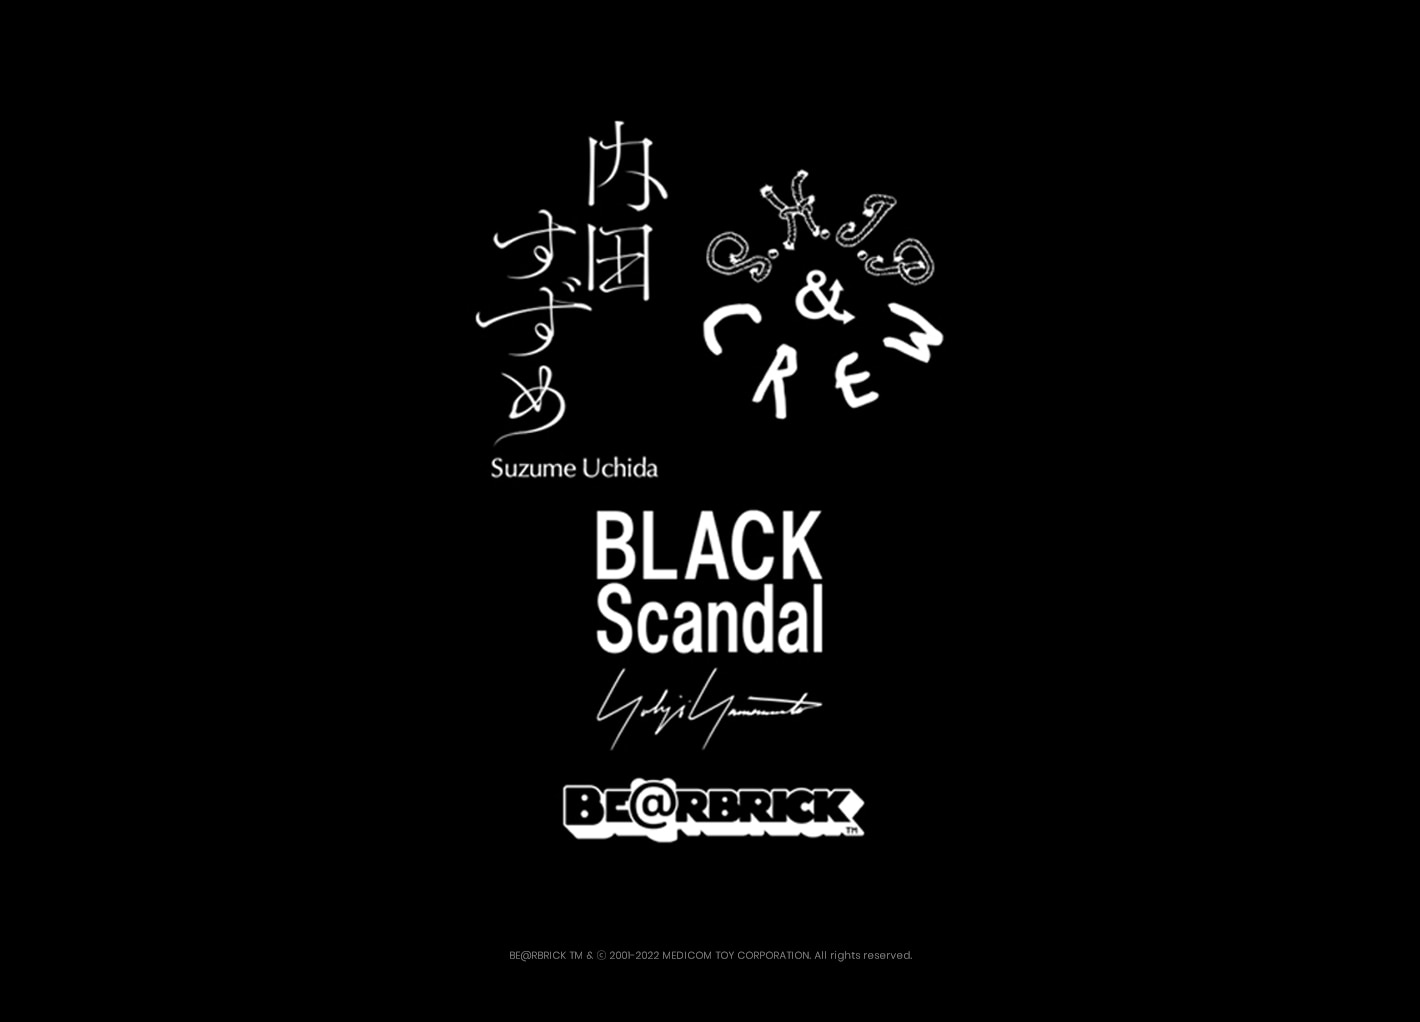 BLACK Scandal Yohji Yamamoto x 内田すずめ x S.H.I.P&crew BE@RBRICK PROJECT